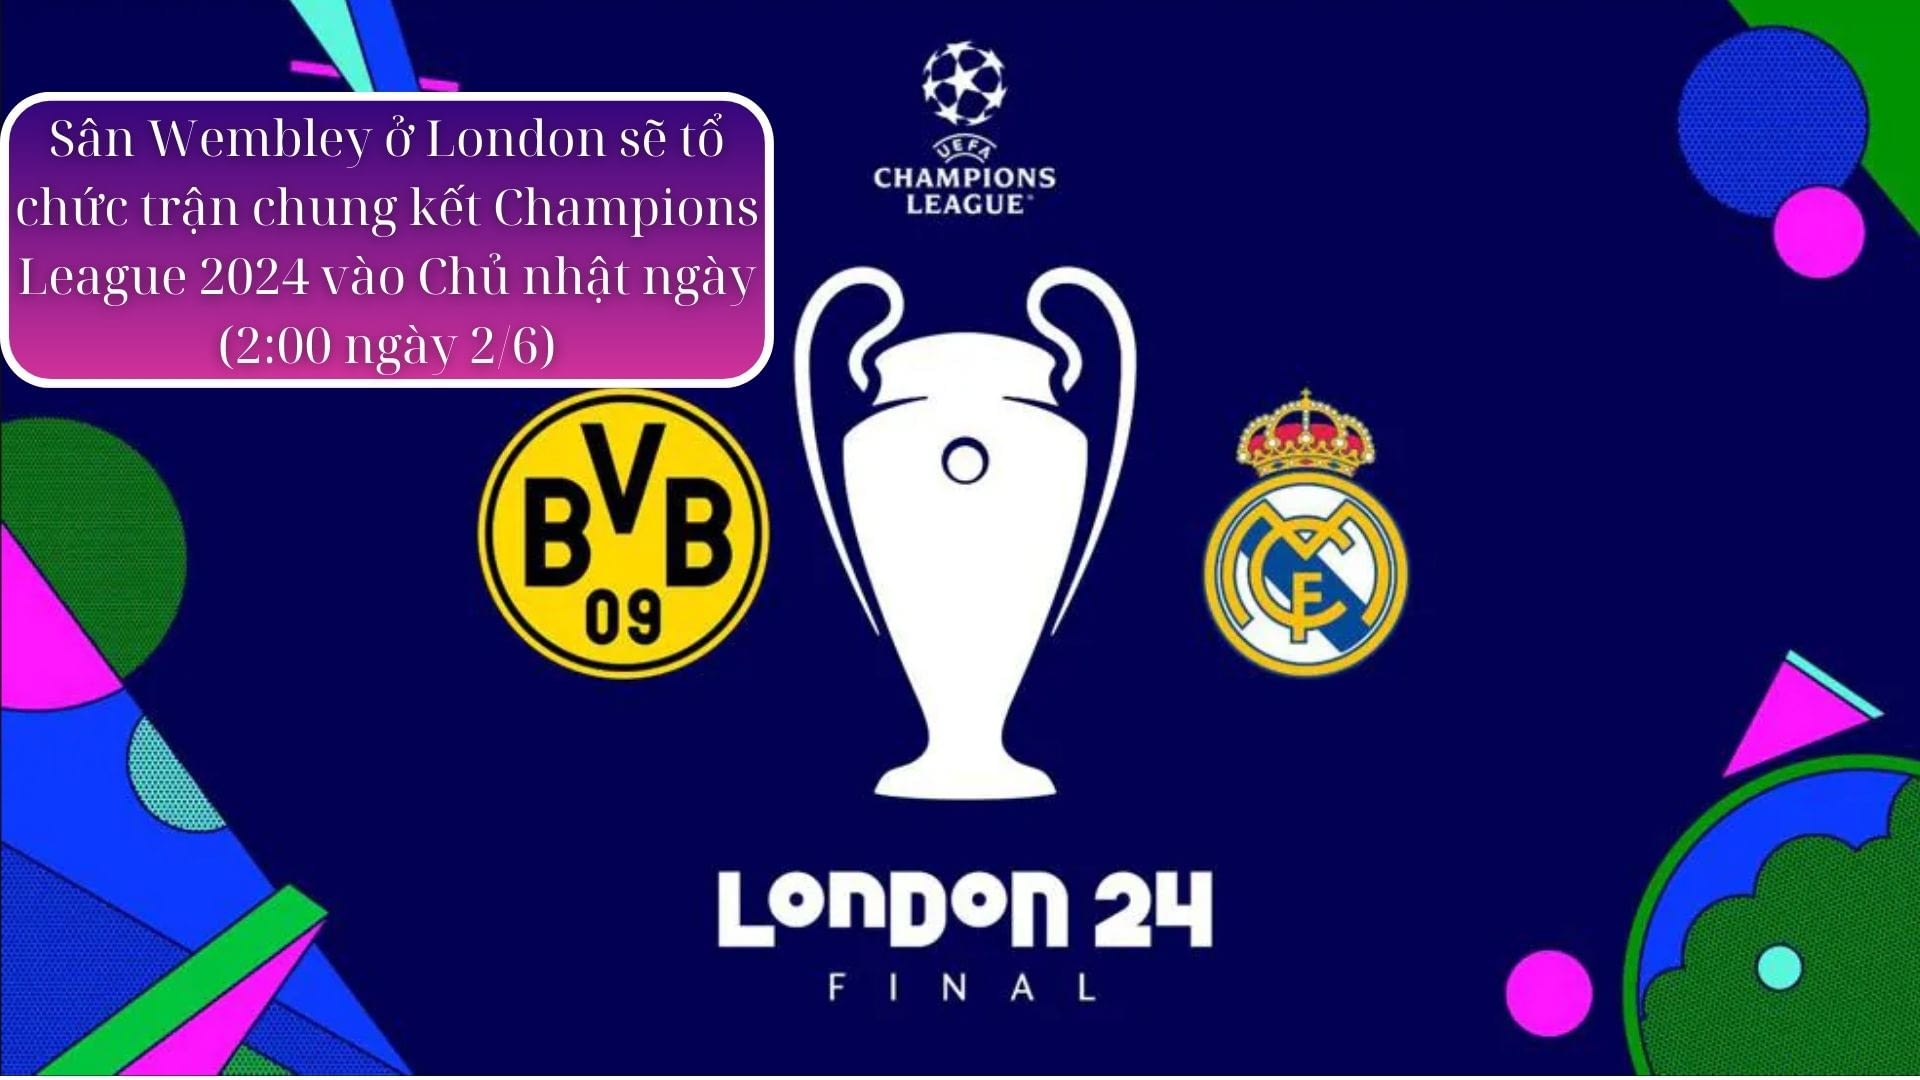 Chung kết UEFA Champions League 2024 sẽ diễn ra trên sân Wembley Luân Đôn